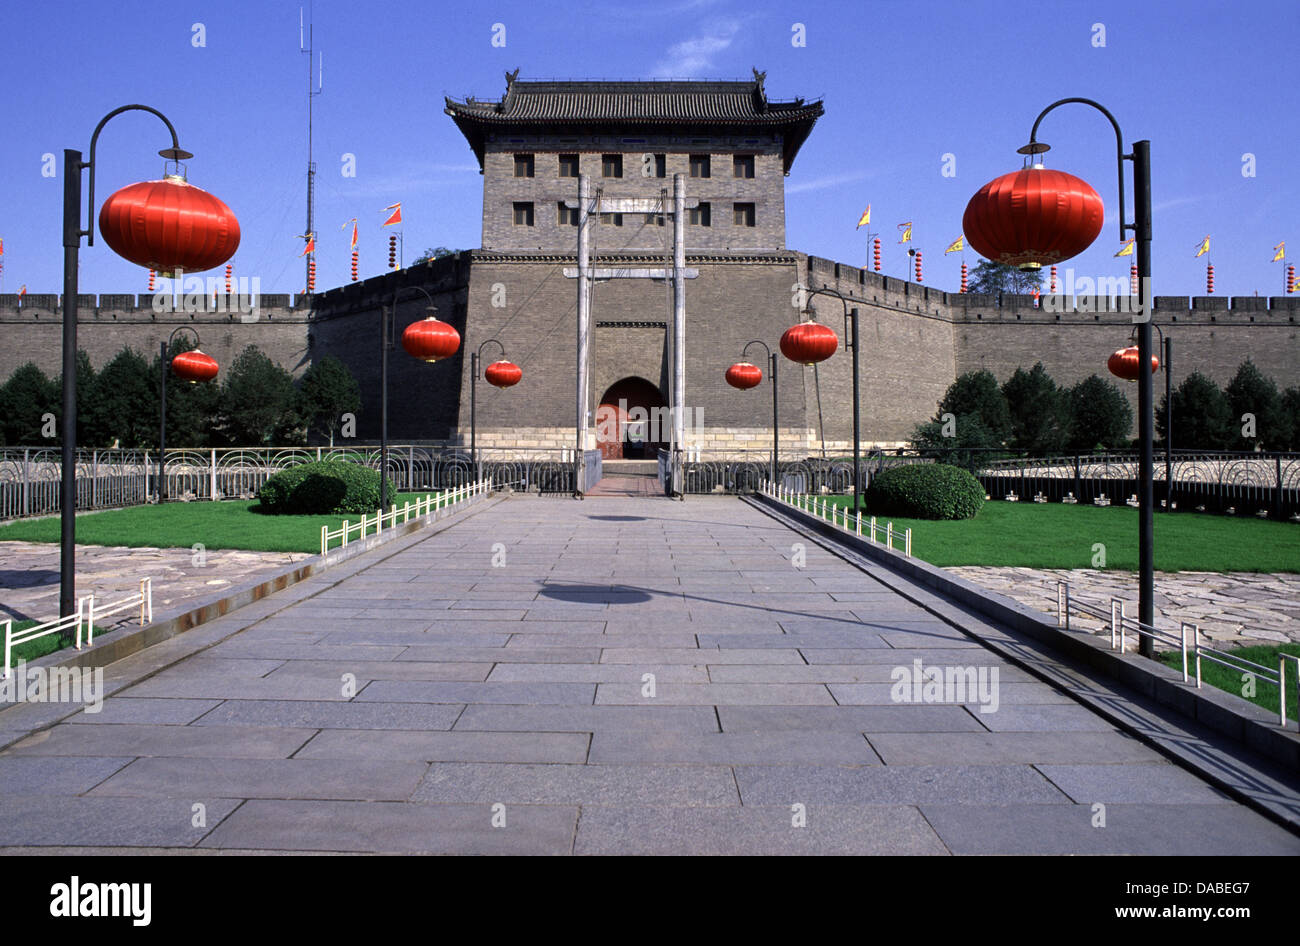 Vue de la porte de la barbacane sud fortifications de Xian, également connu sous le nom de Xi'an city wall des dynasties Ming et Qing situé dans la commune urbaine de la ville de Xi'an dans la province du Shaanxi, Chine Banque D'Images